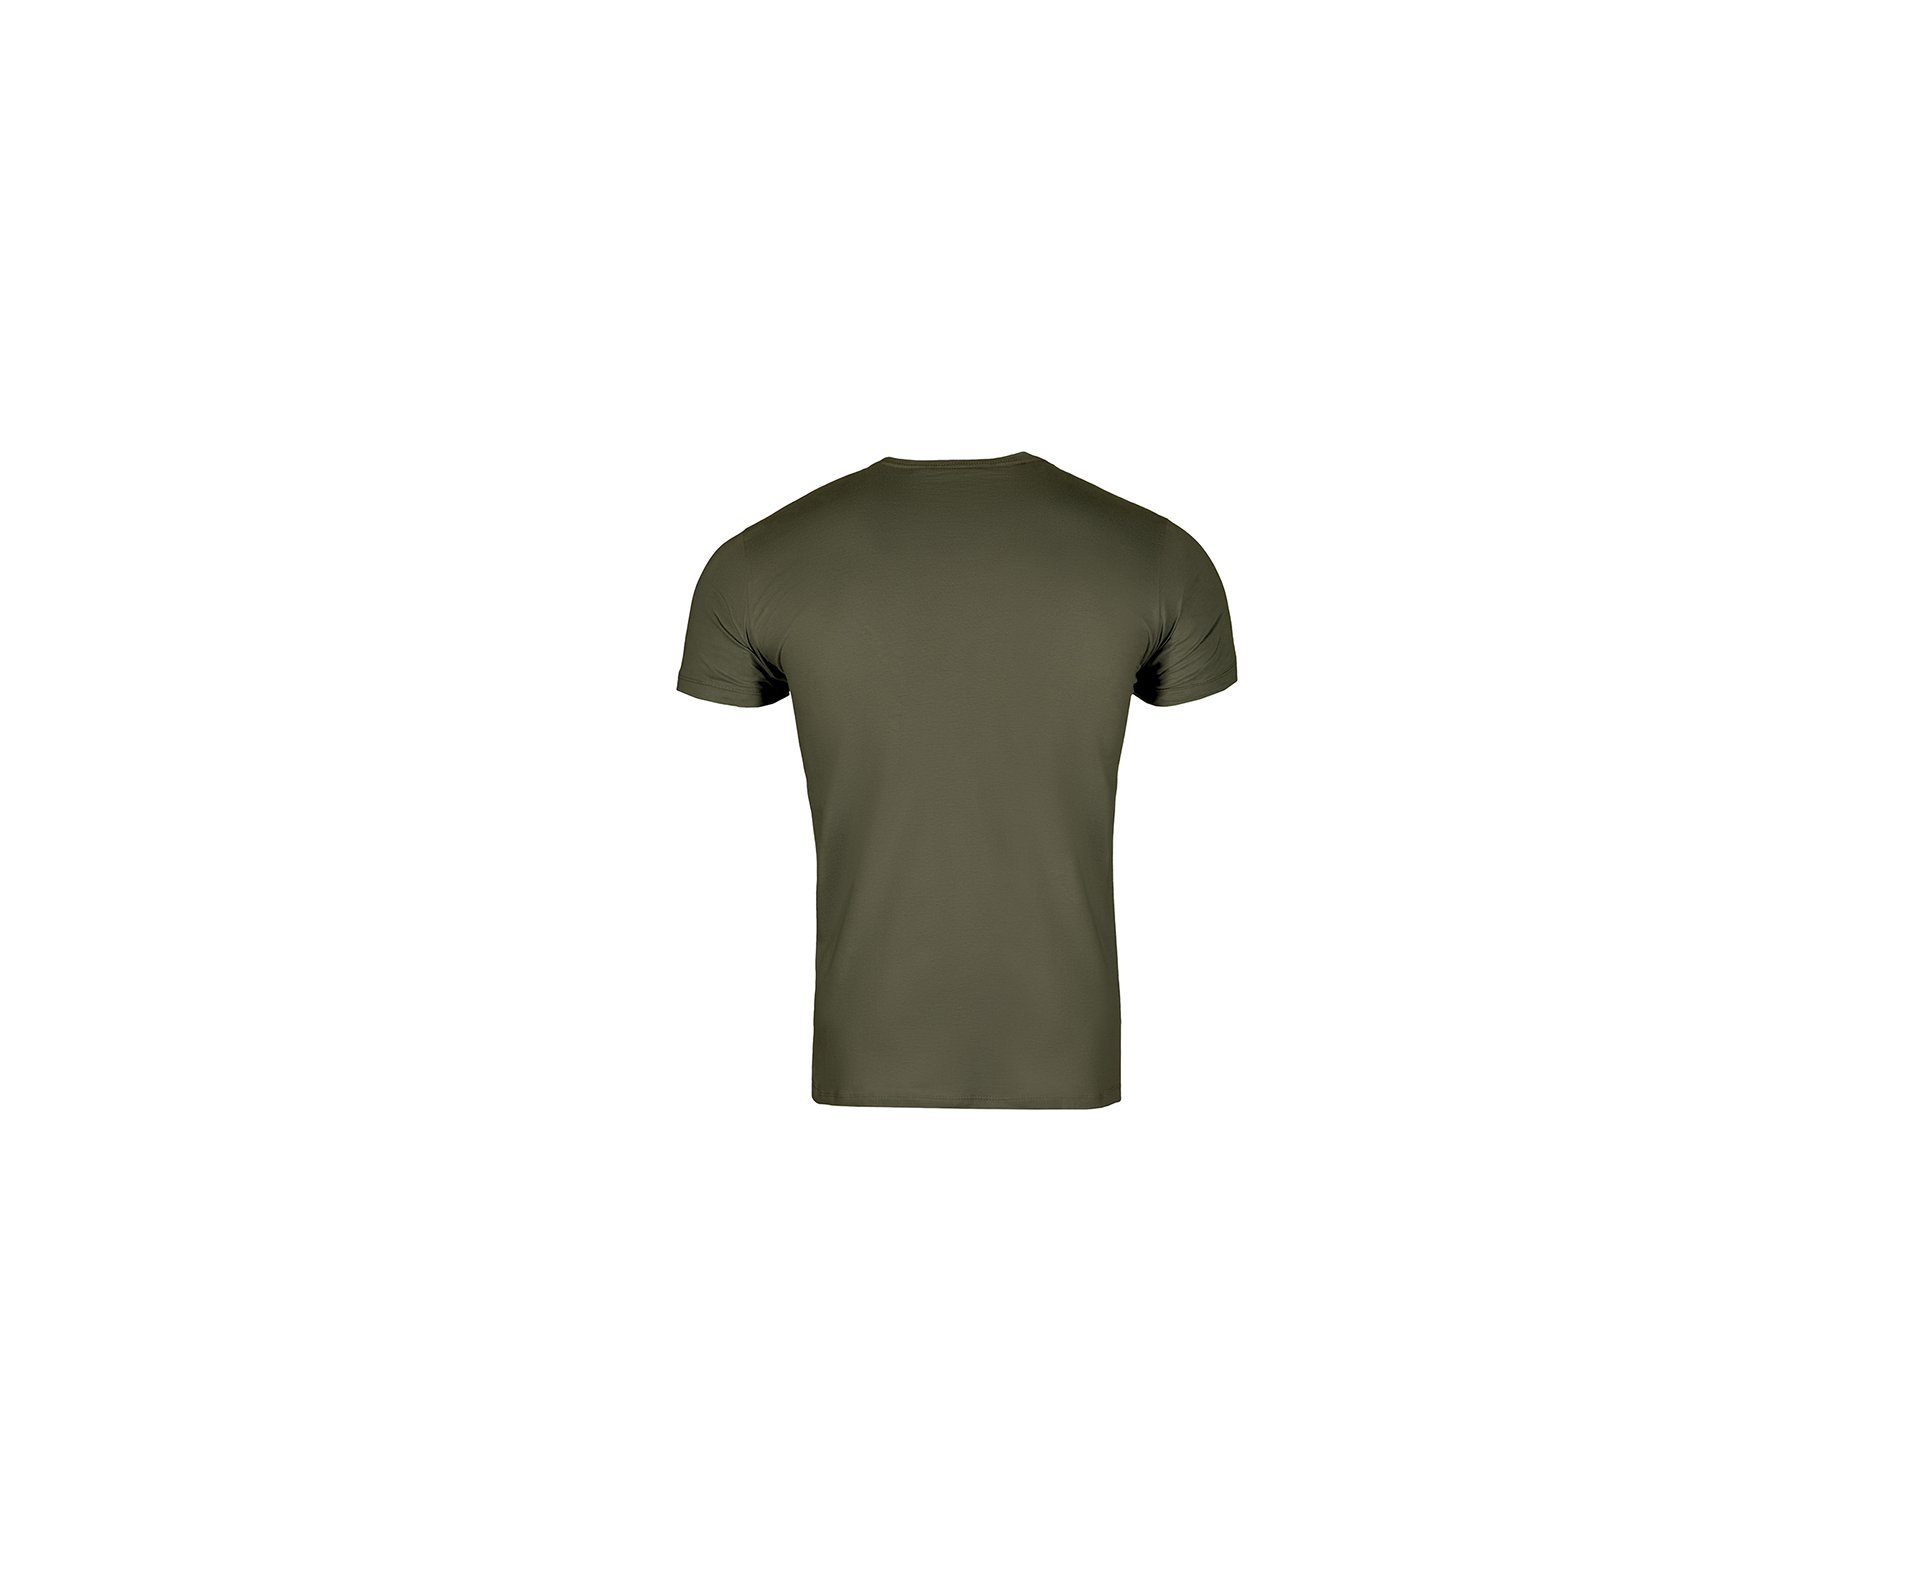 Camiseta T-shirt Invictus Concept Troop - P